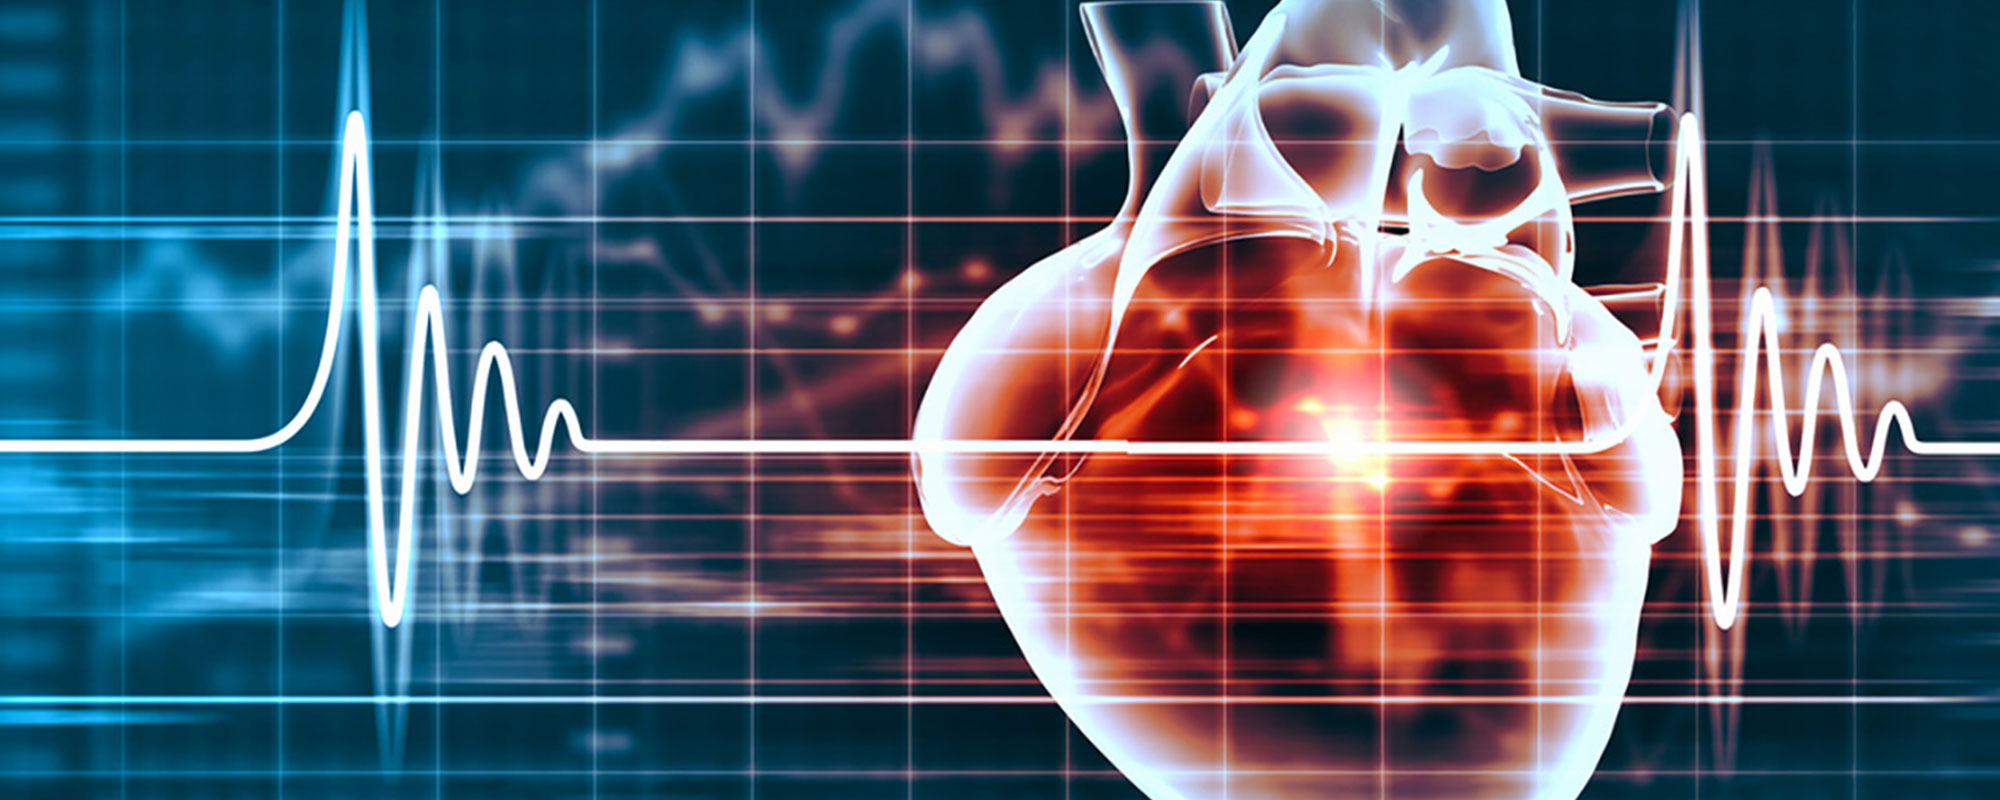 С какими симптомами нужно обращаться к кардиологу?